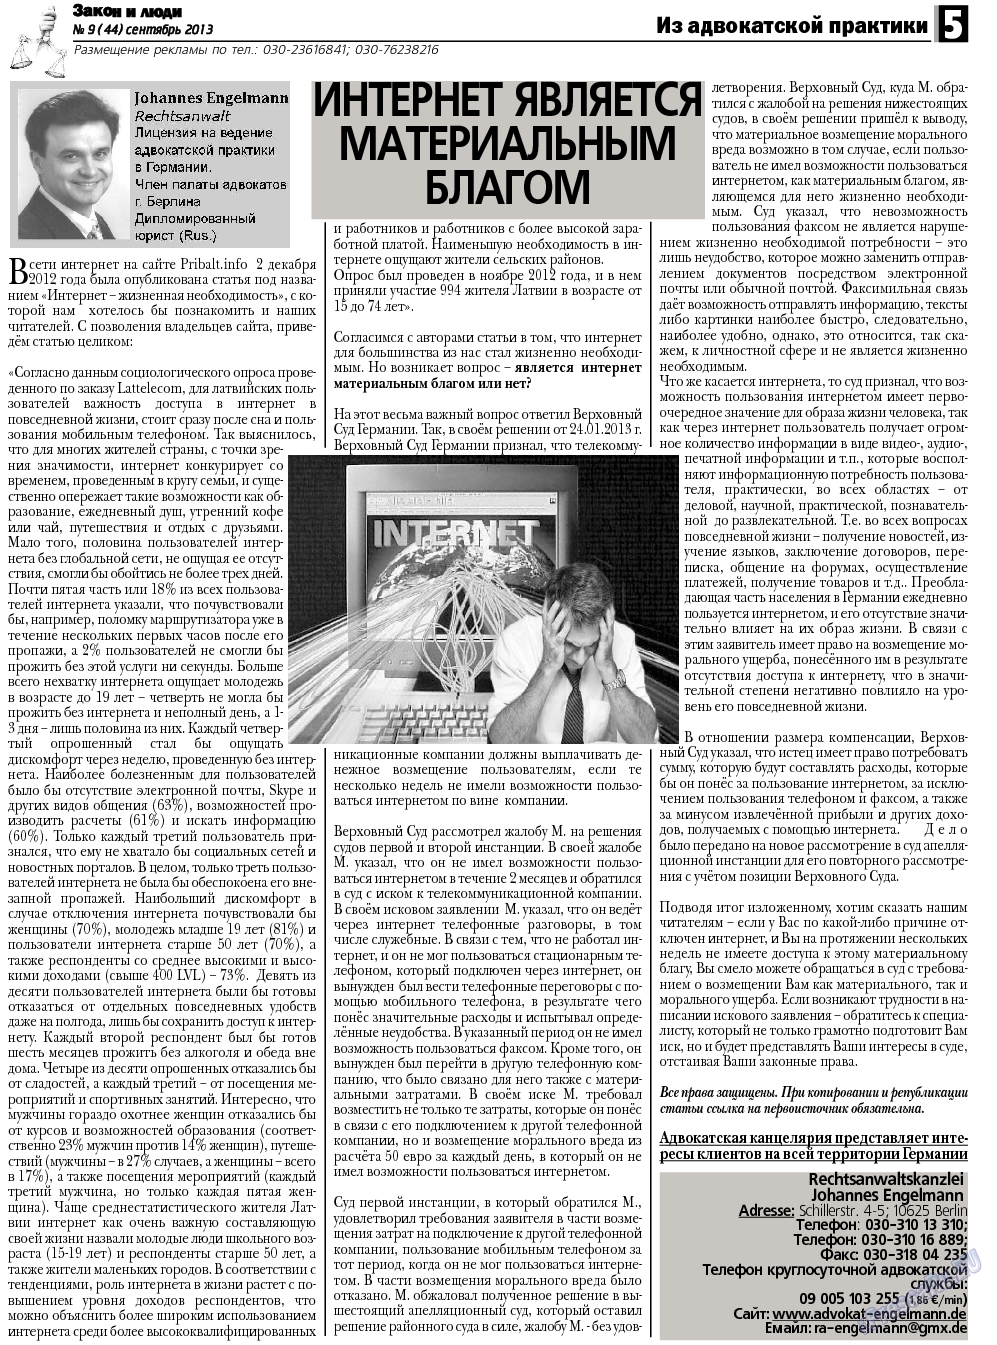 Закон и люди, газета. 2013 №9 стр.5